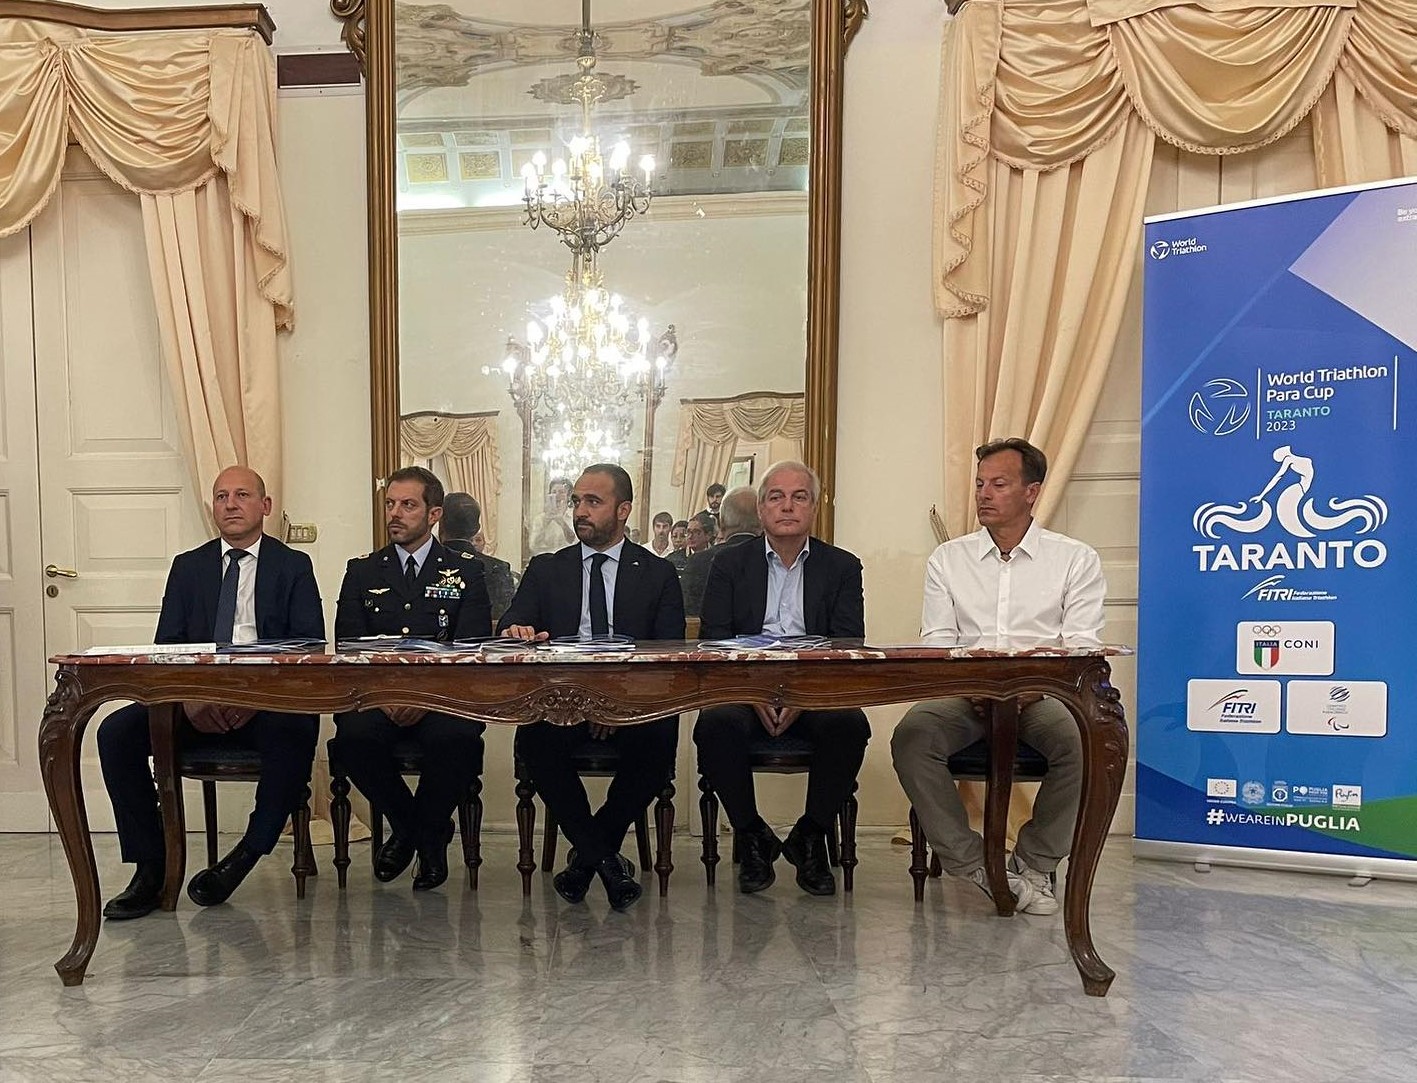 World Triathlon Para Cup Taranto 2023, le dichiarazioni della conferenza stampa